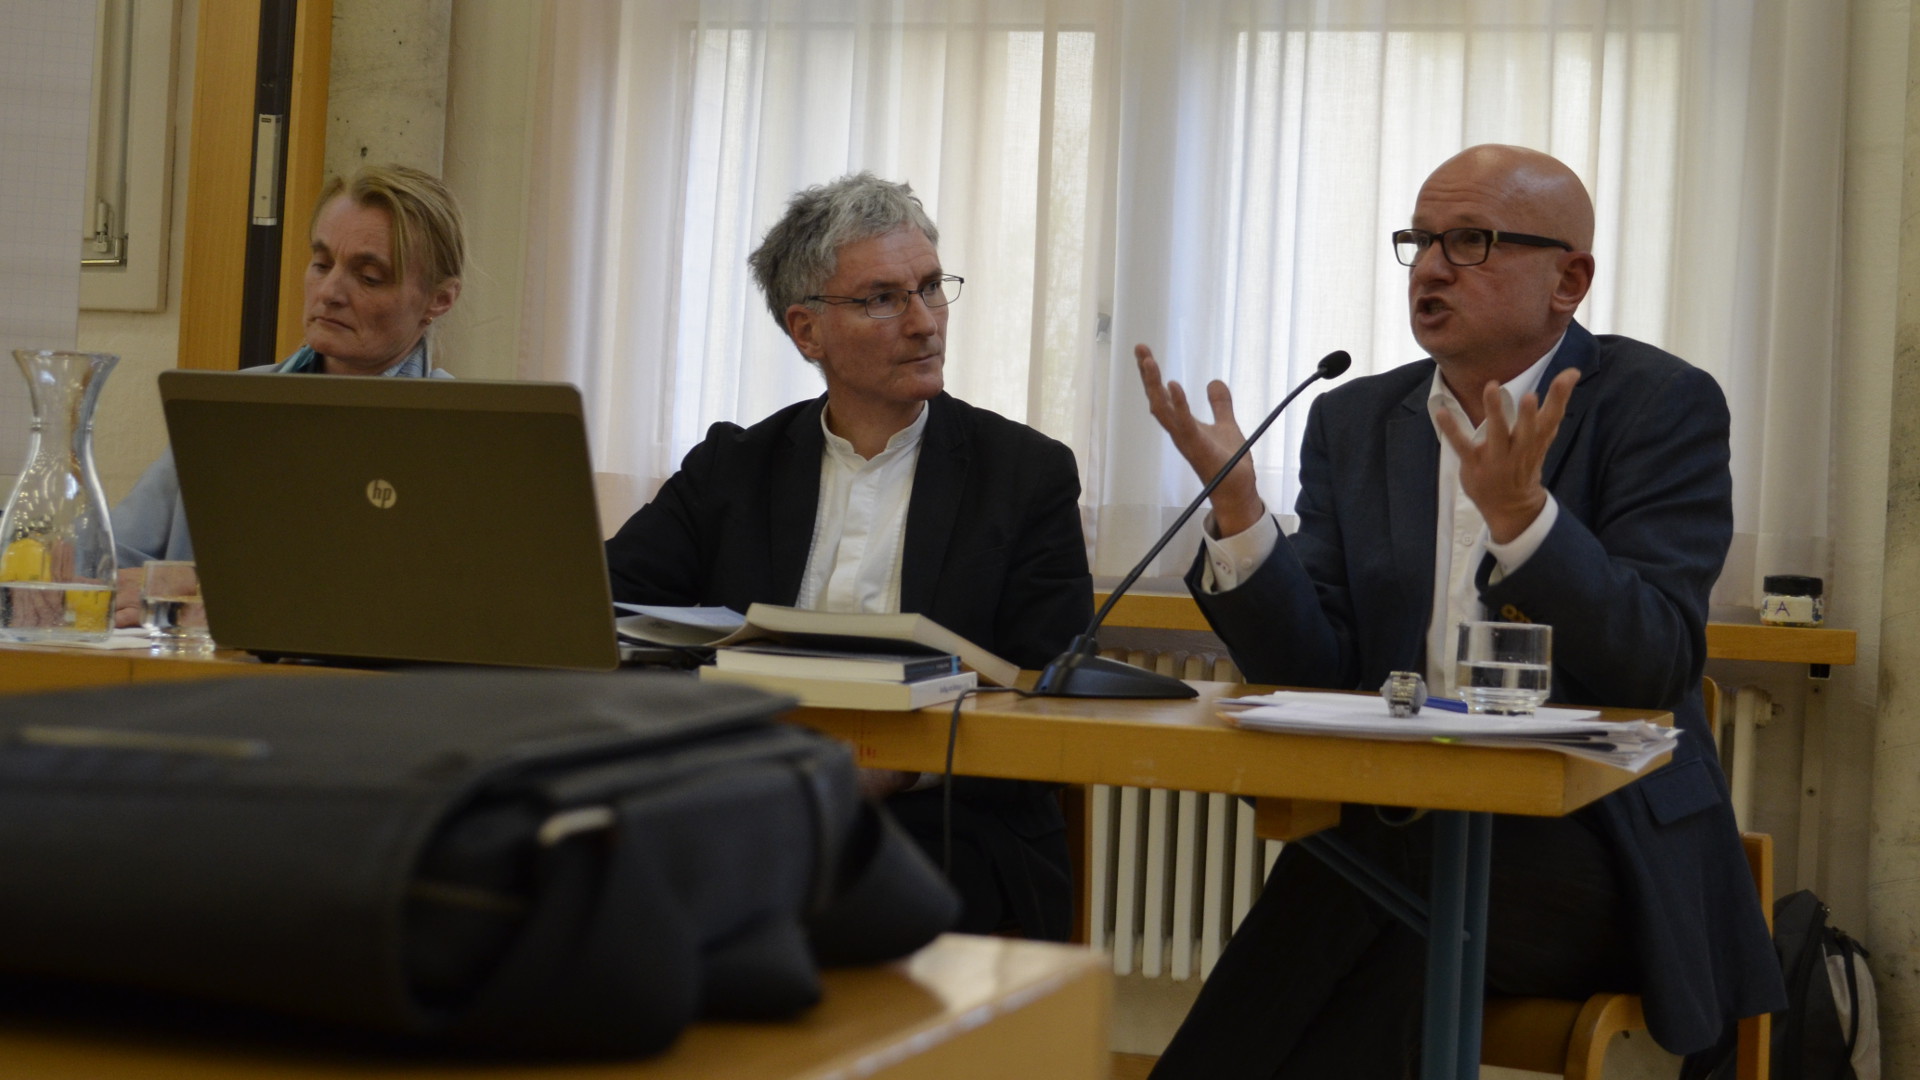 Hanspeter Schmitt (von rechts), Thomas Staubli und Monika Renz am Katholischen Dialog im Romerohaus Luzern, 30.11.15